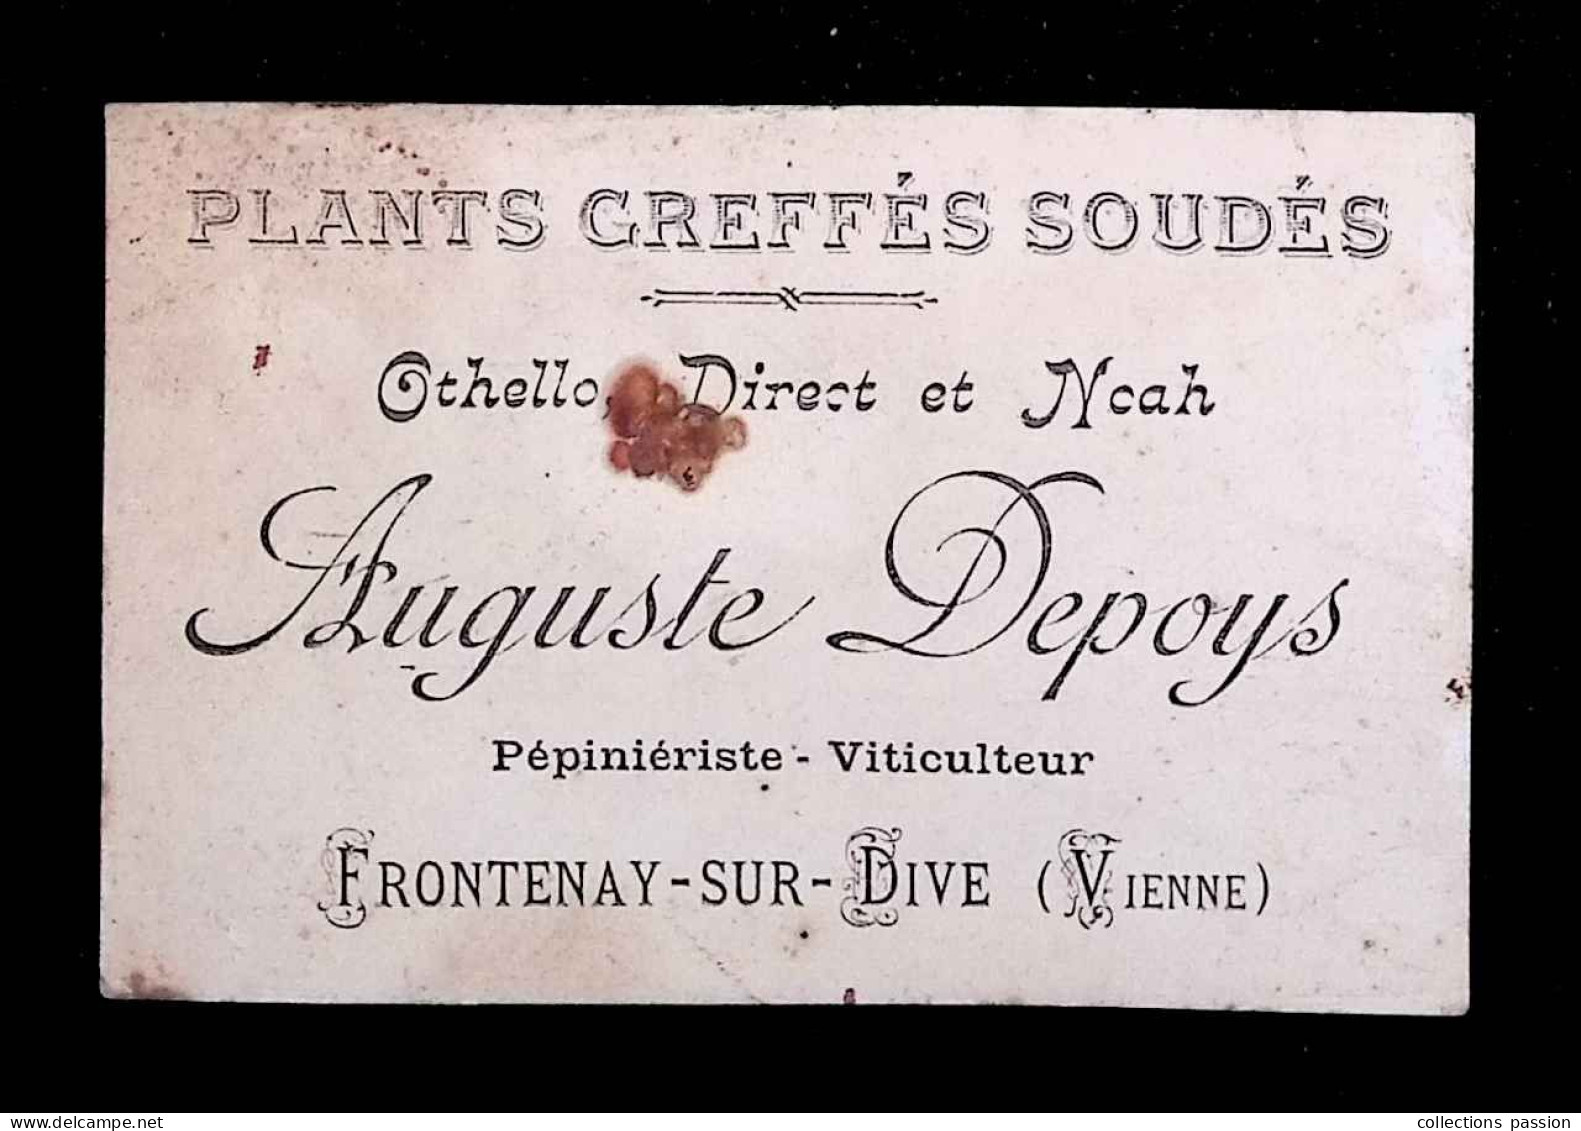 Carte De Visite, Plants Greffés Soudés, Auguste Depoys, Pépinièriste , Viticulteur, 86, Vienne, Frontenay Sur Dive - Cartes De Visite